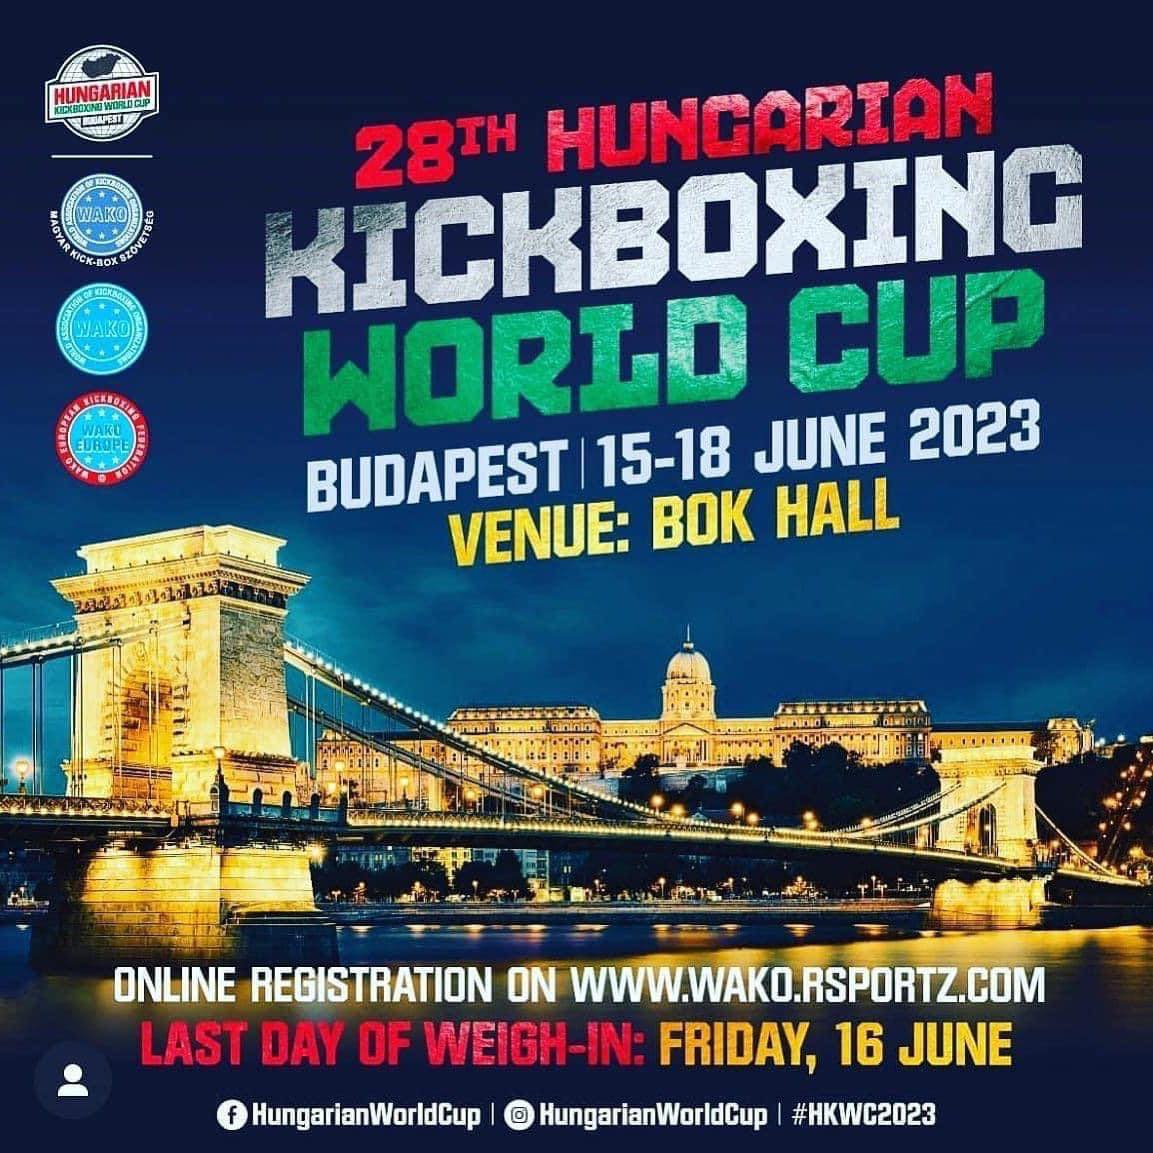 Genç kickboksör Türker, Budapeşte’de düzenlenecek turnuvaya katılacak